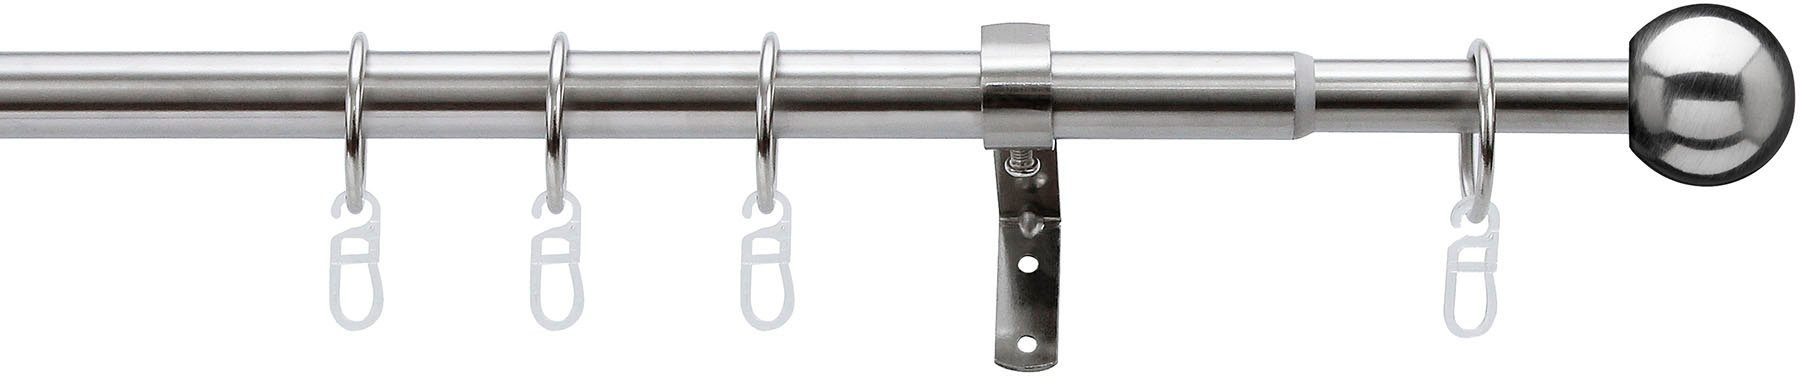 Gardinenstange Formentor, indeko, Ø 20 mm, 1-läufig, ausziehbar, verschraubt, Stahl, stufenlos verstellbare Teleskopstange edelstahlfarben